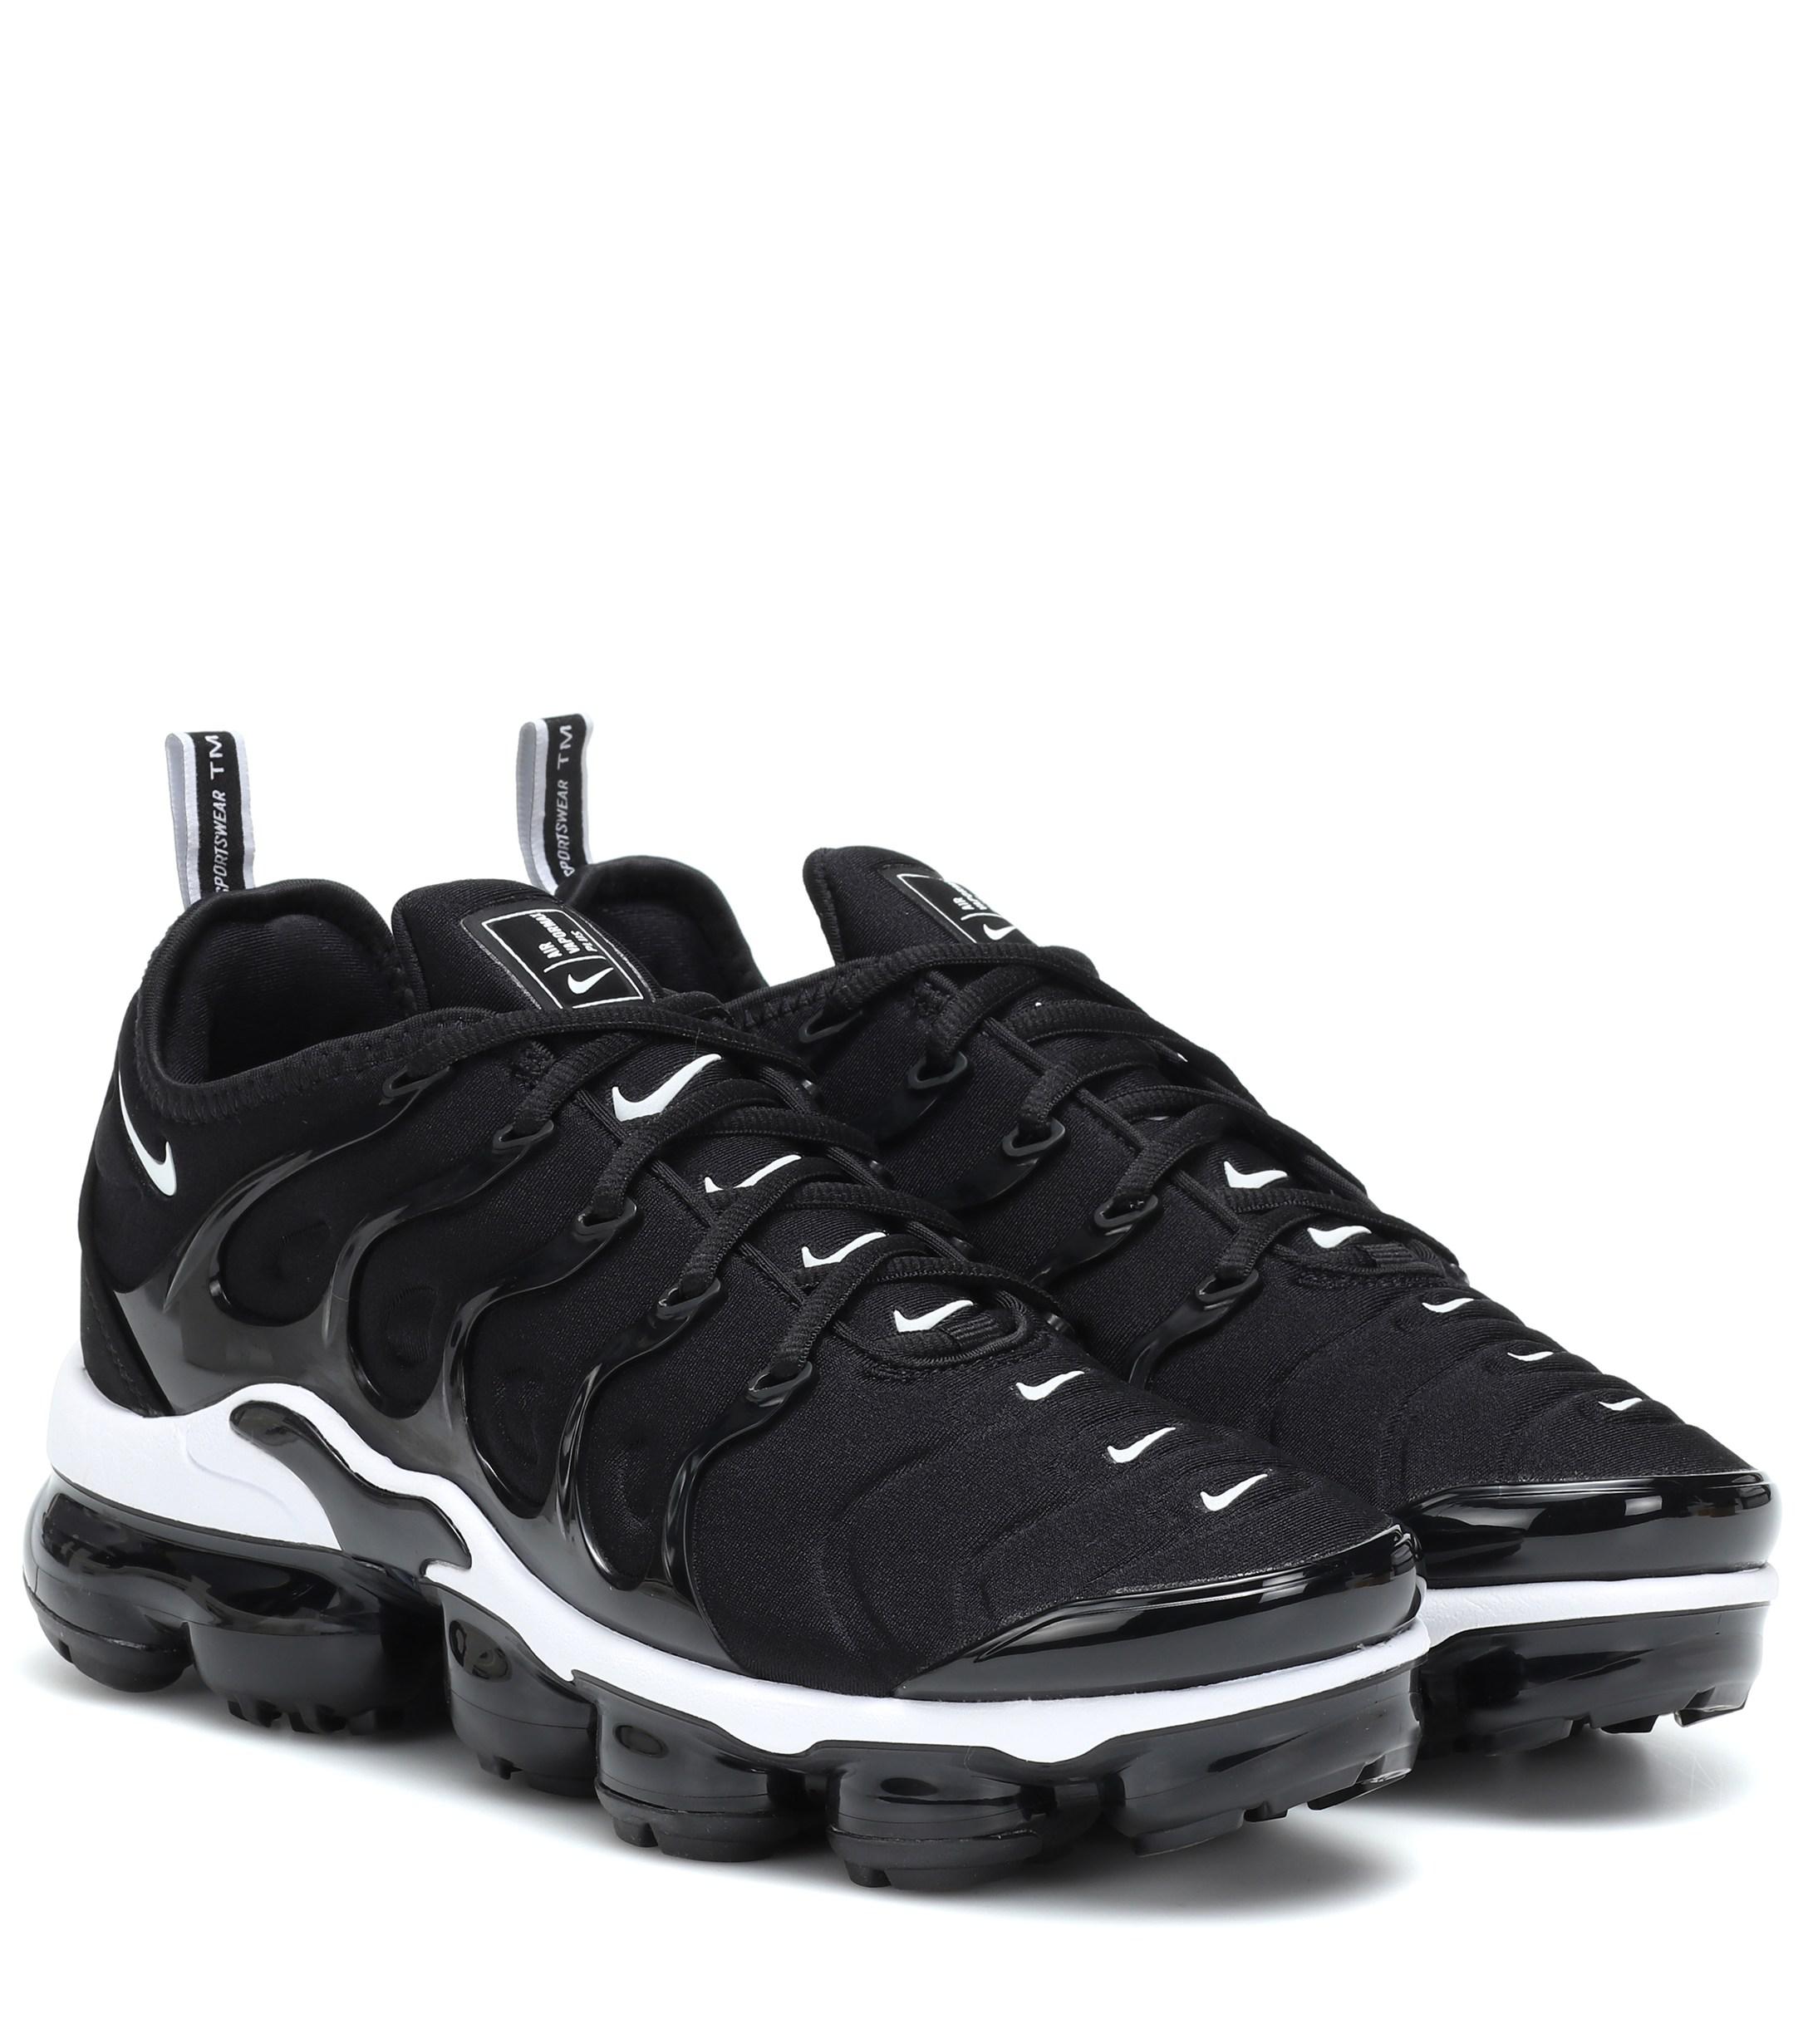 Nike Air Vapormax Plus Sneakers in Black/White (Black) - Lyst